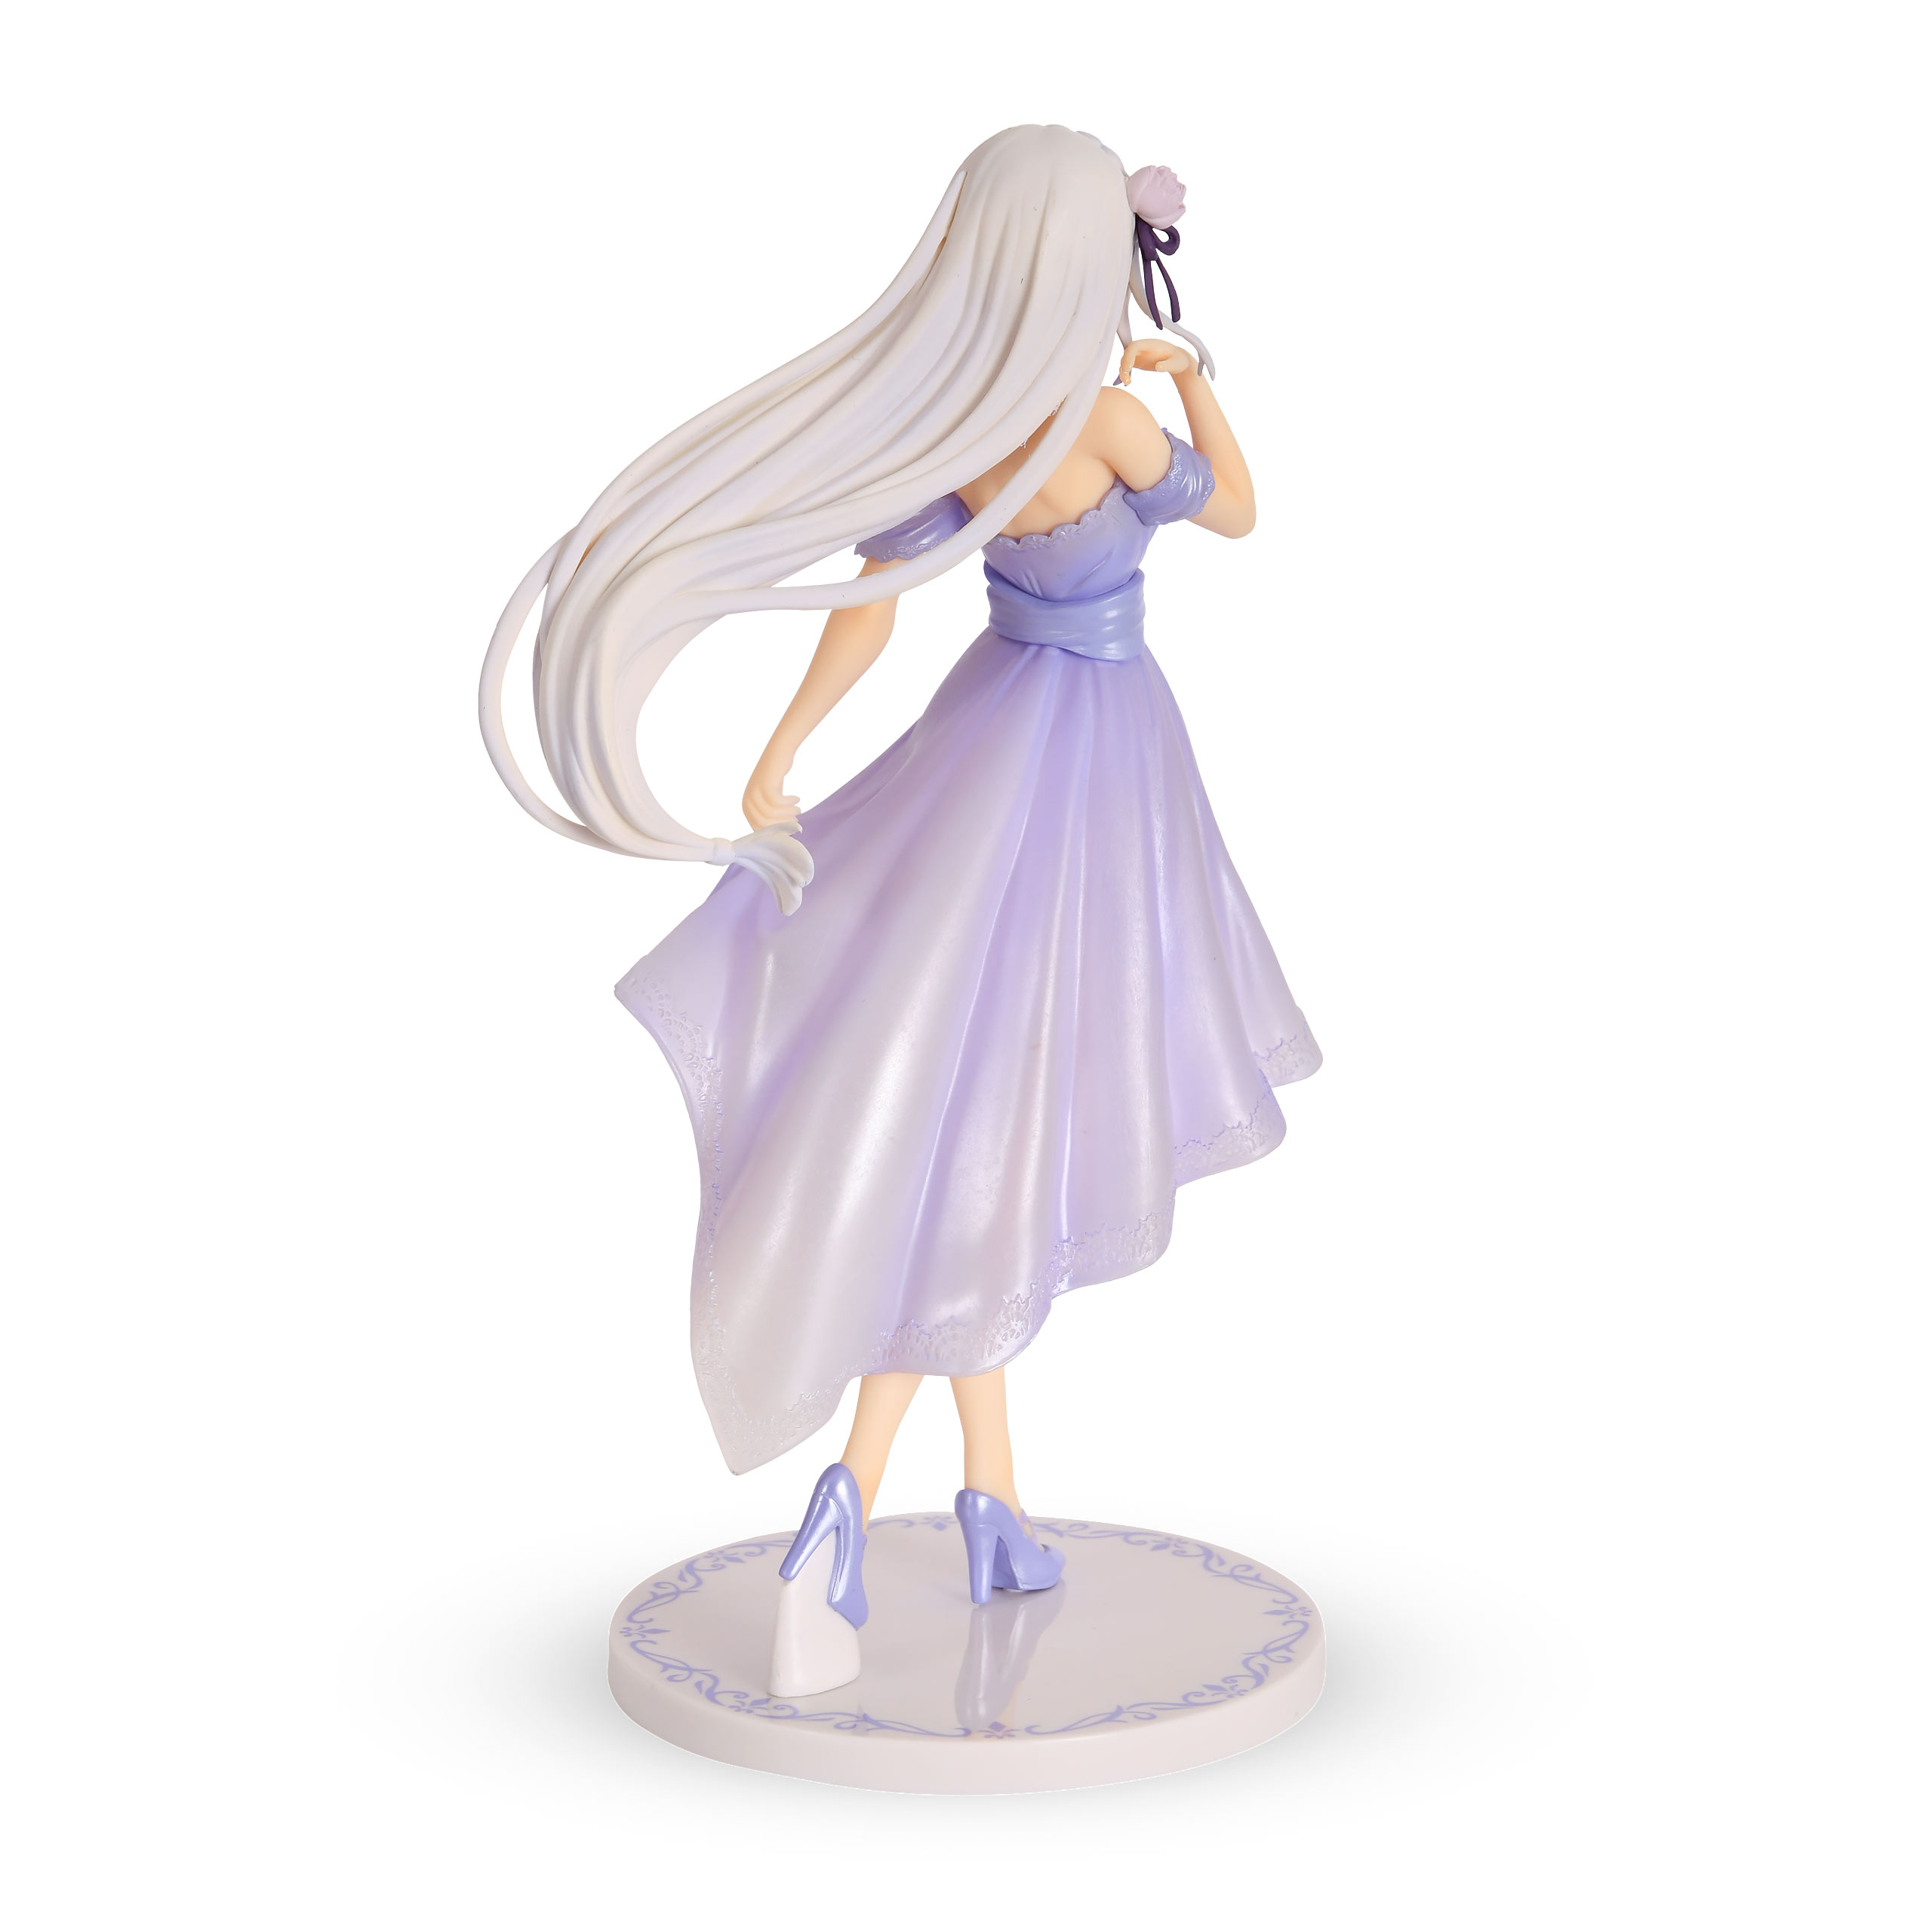 Re:Zero - Emilia Dreaming Future Story Figur